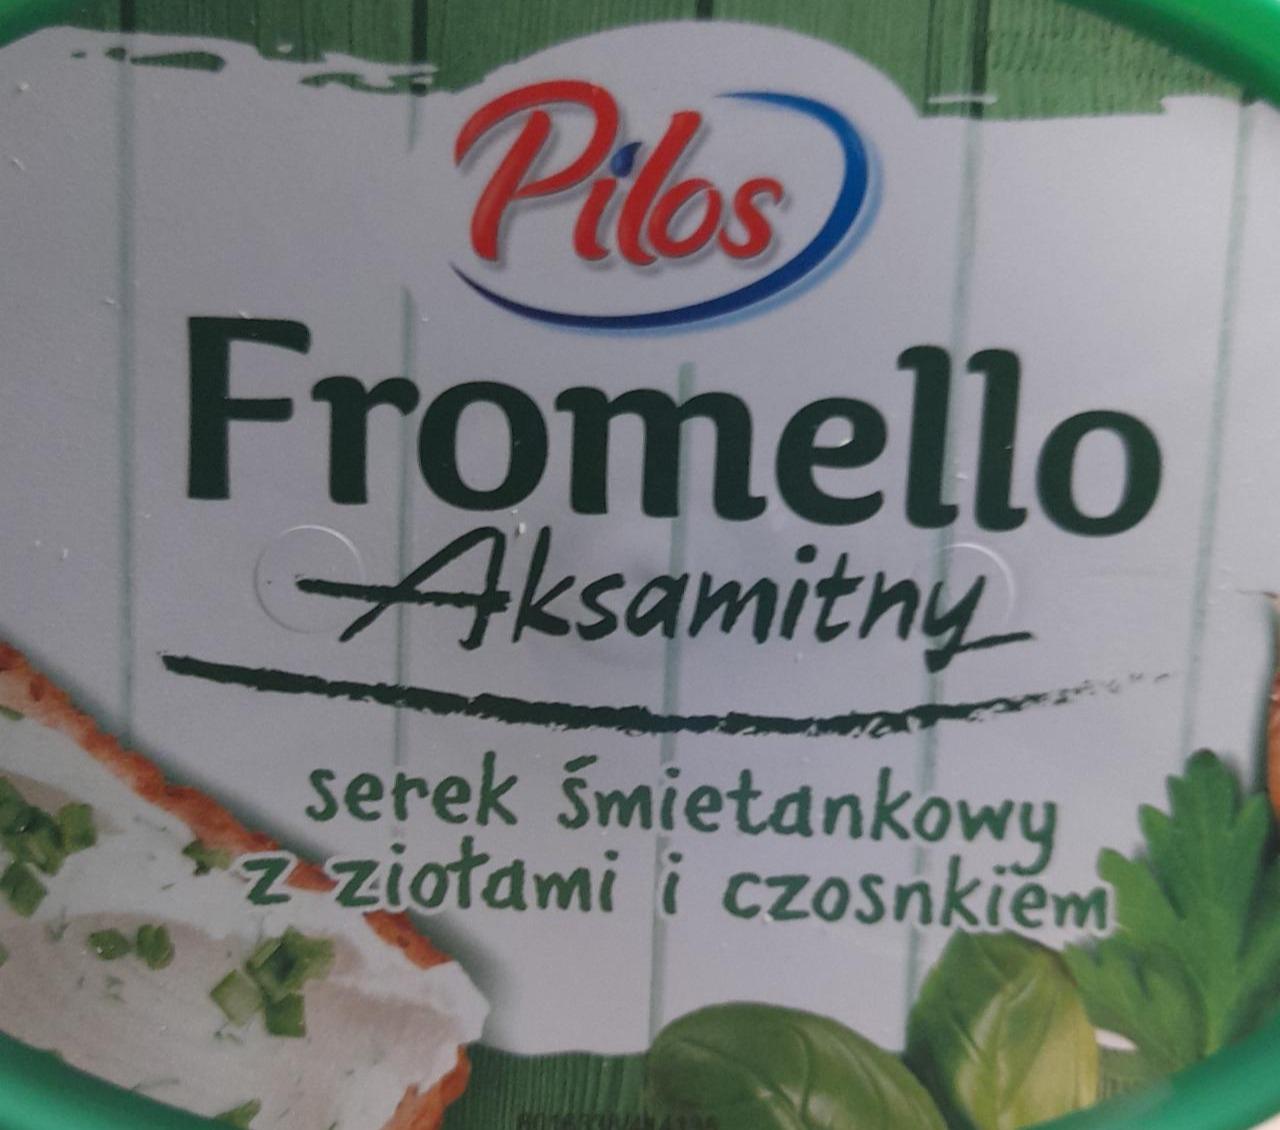 Фото - Fromello Aksamithy serek smietankowy z ziotami i czosnkiem Pilos